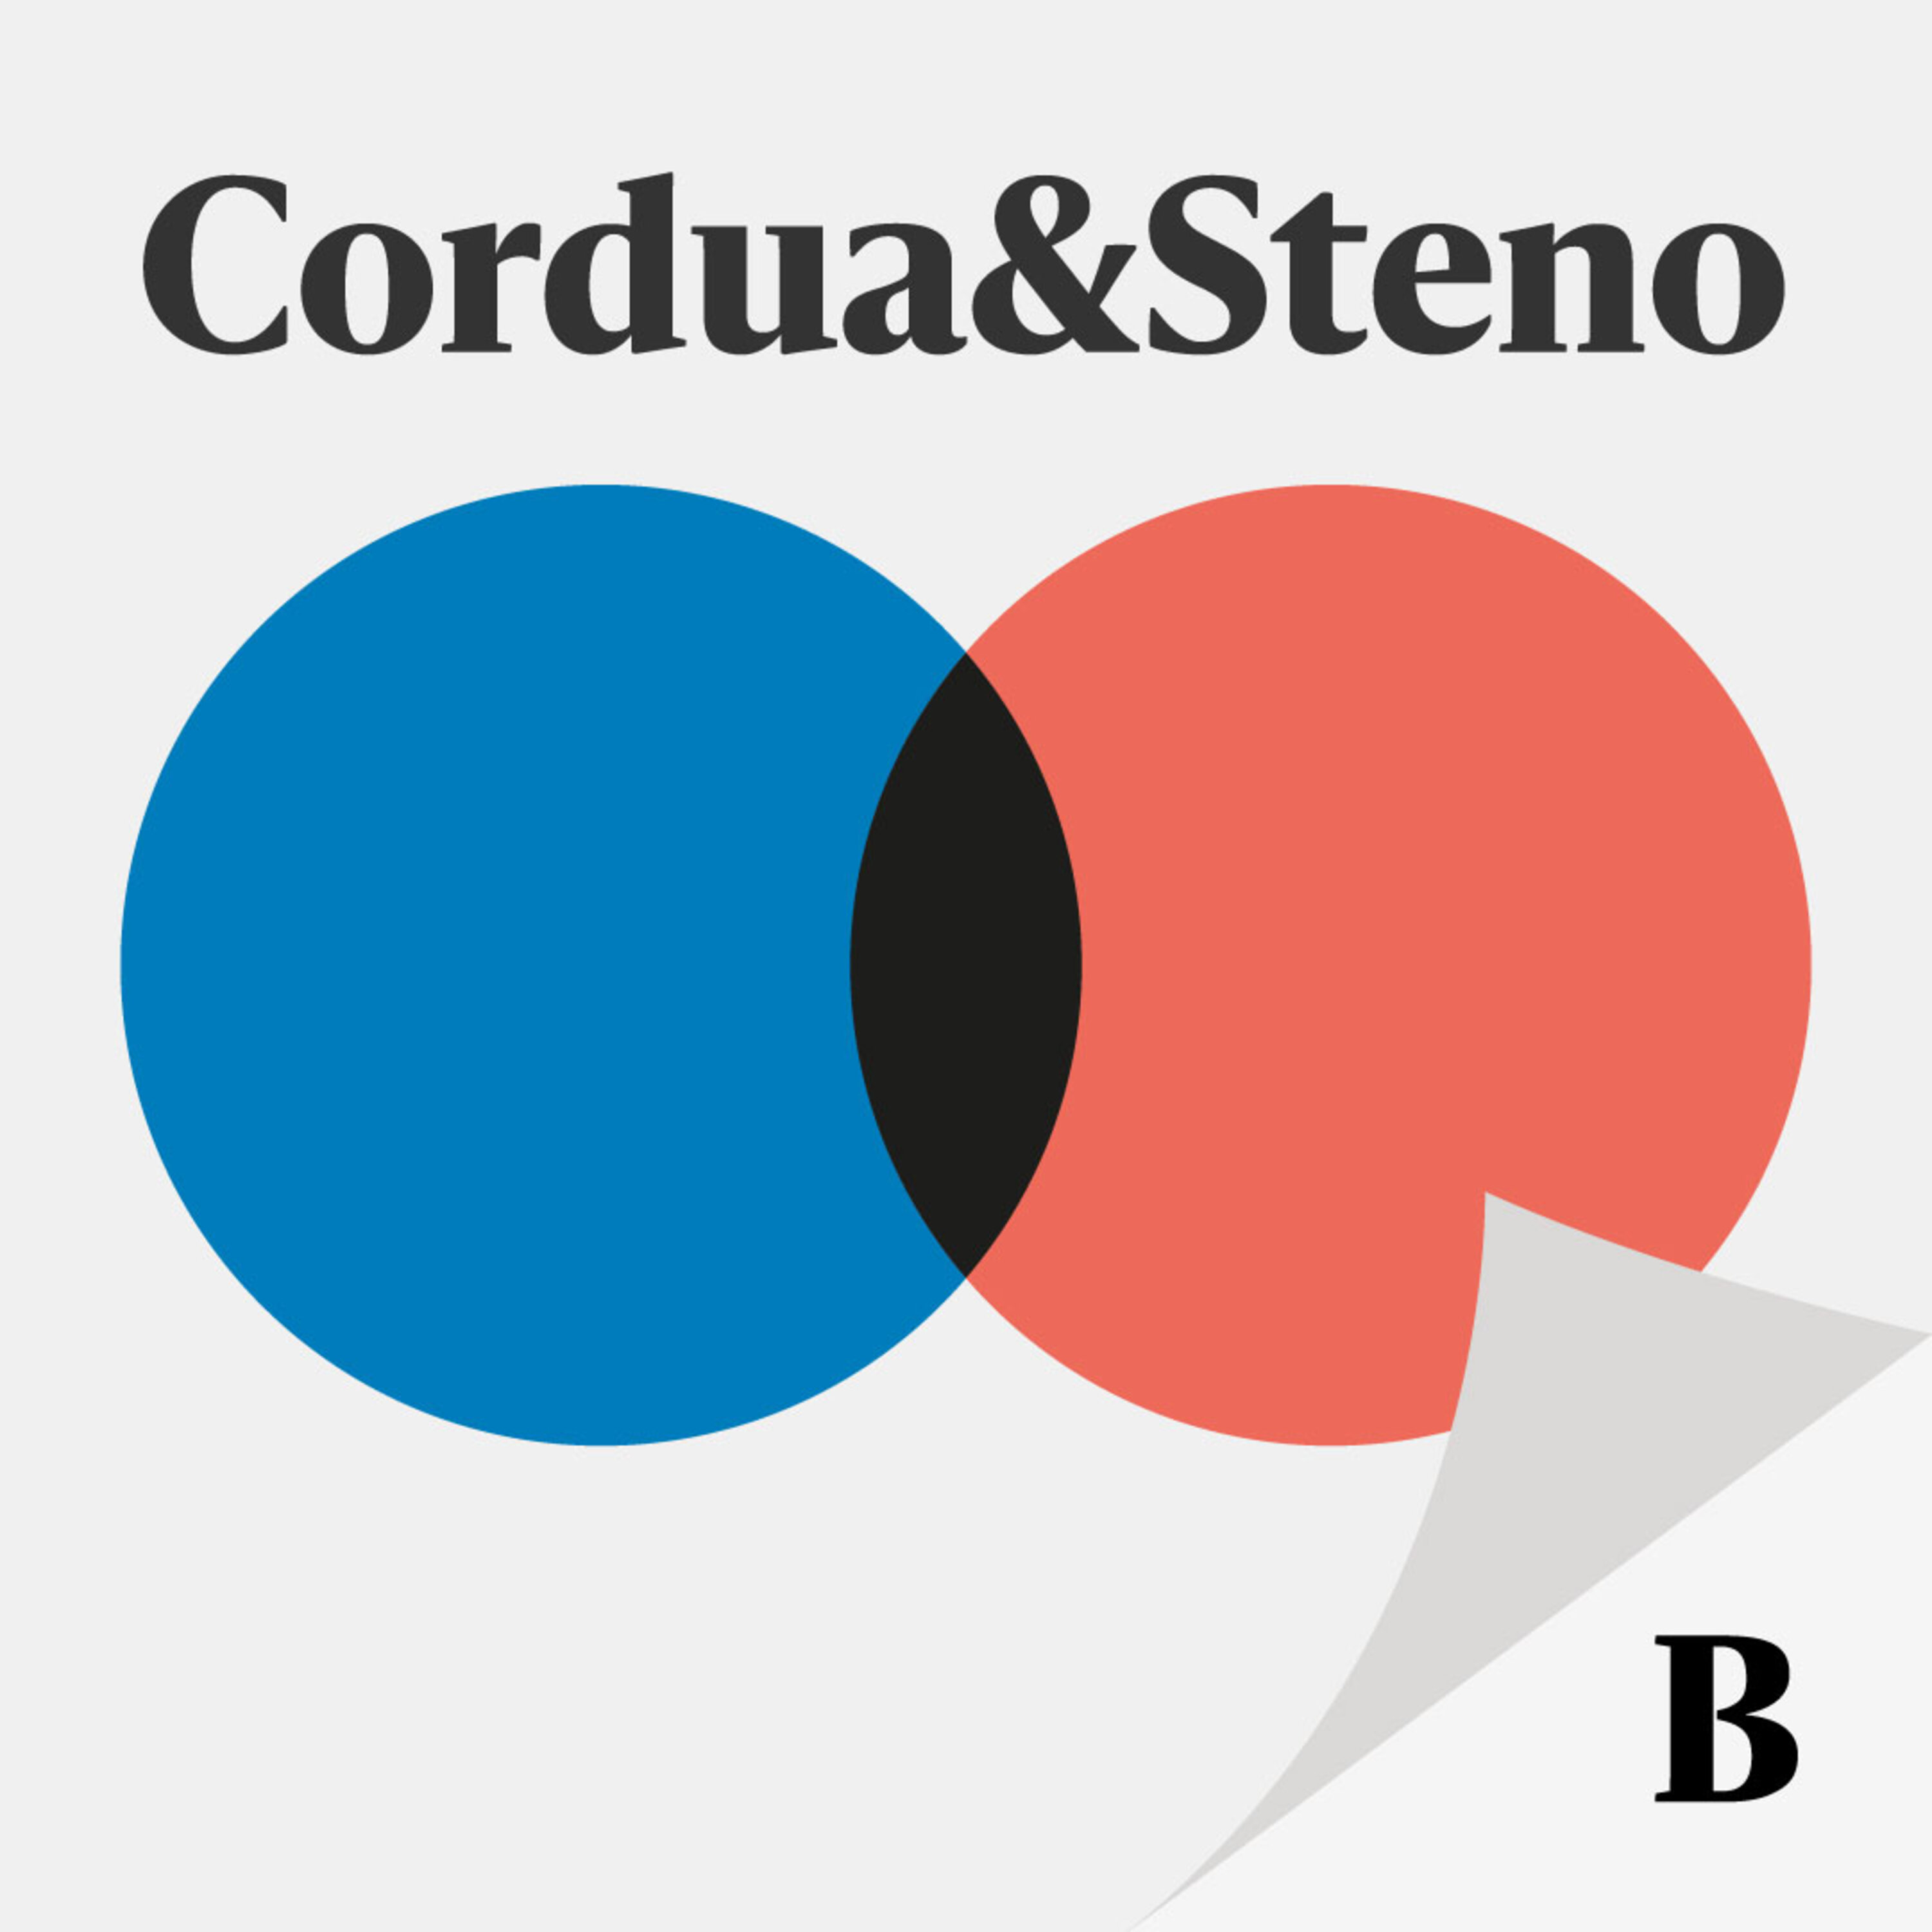 Cordua & Steno valgspecial: Valgkampens overbud ville sende Danmark på fattiggården